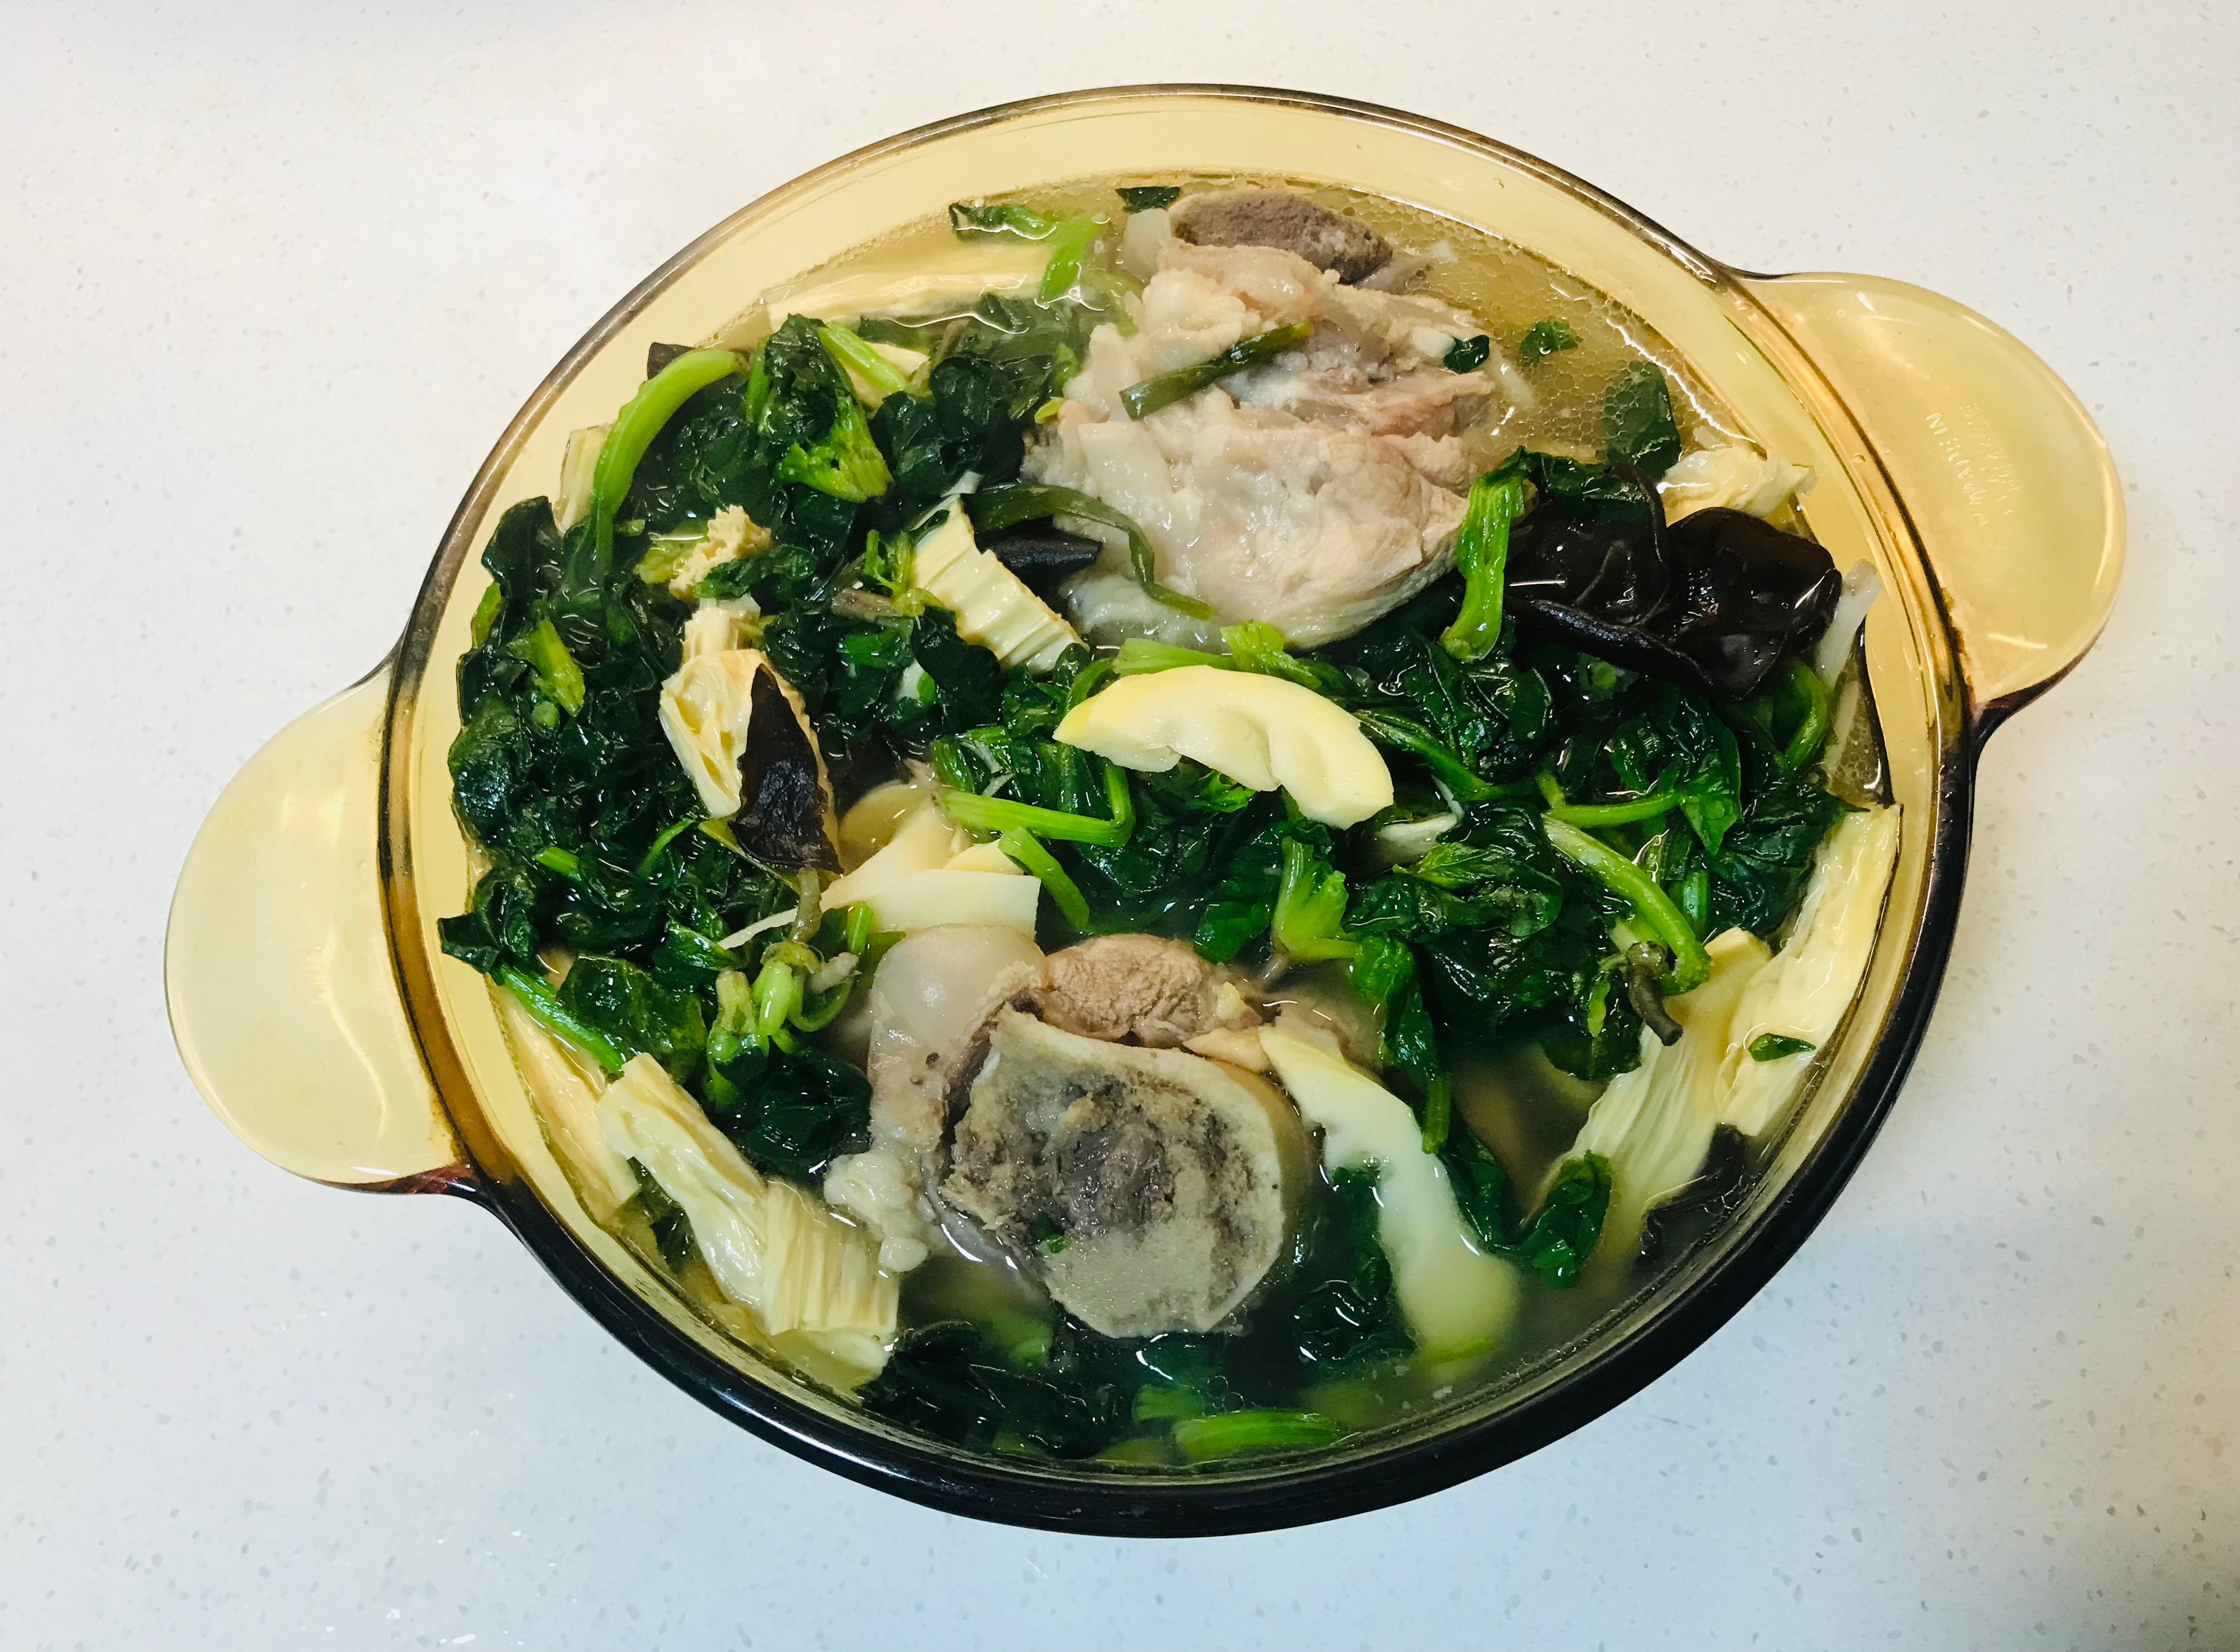 猪骨汤（菠菜、猪皮、腐竹、春笋、黑木耳、咸肉）
by wqy的做法